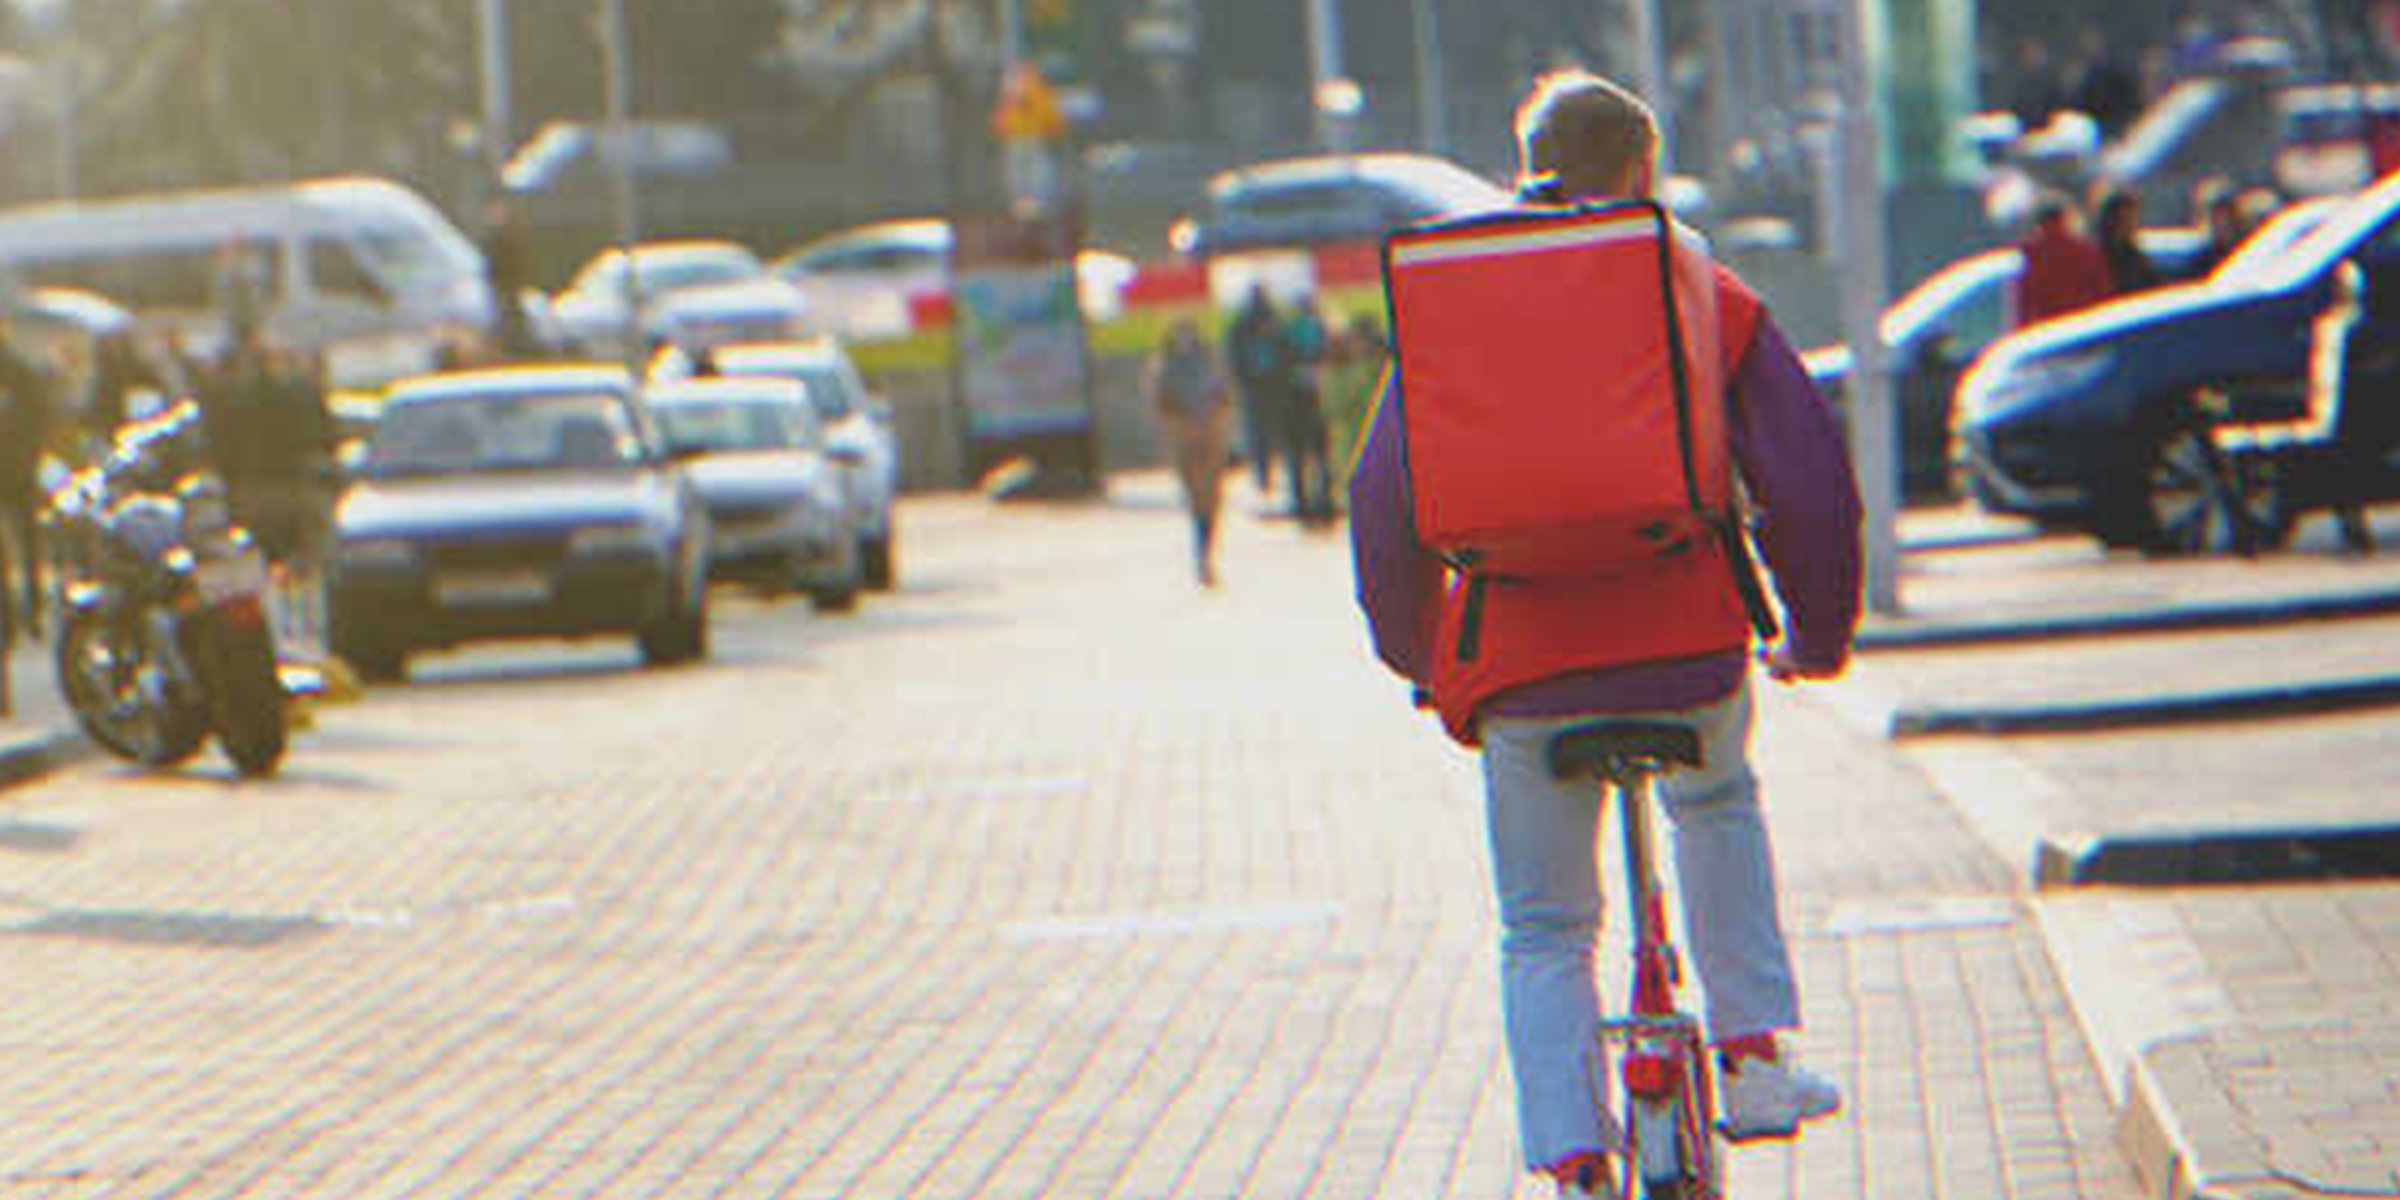 Lieferjunge auf einem Fahrrad | Quelle: Shutterstock